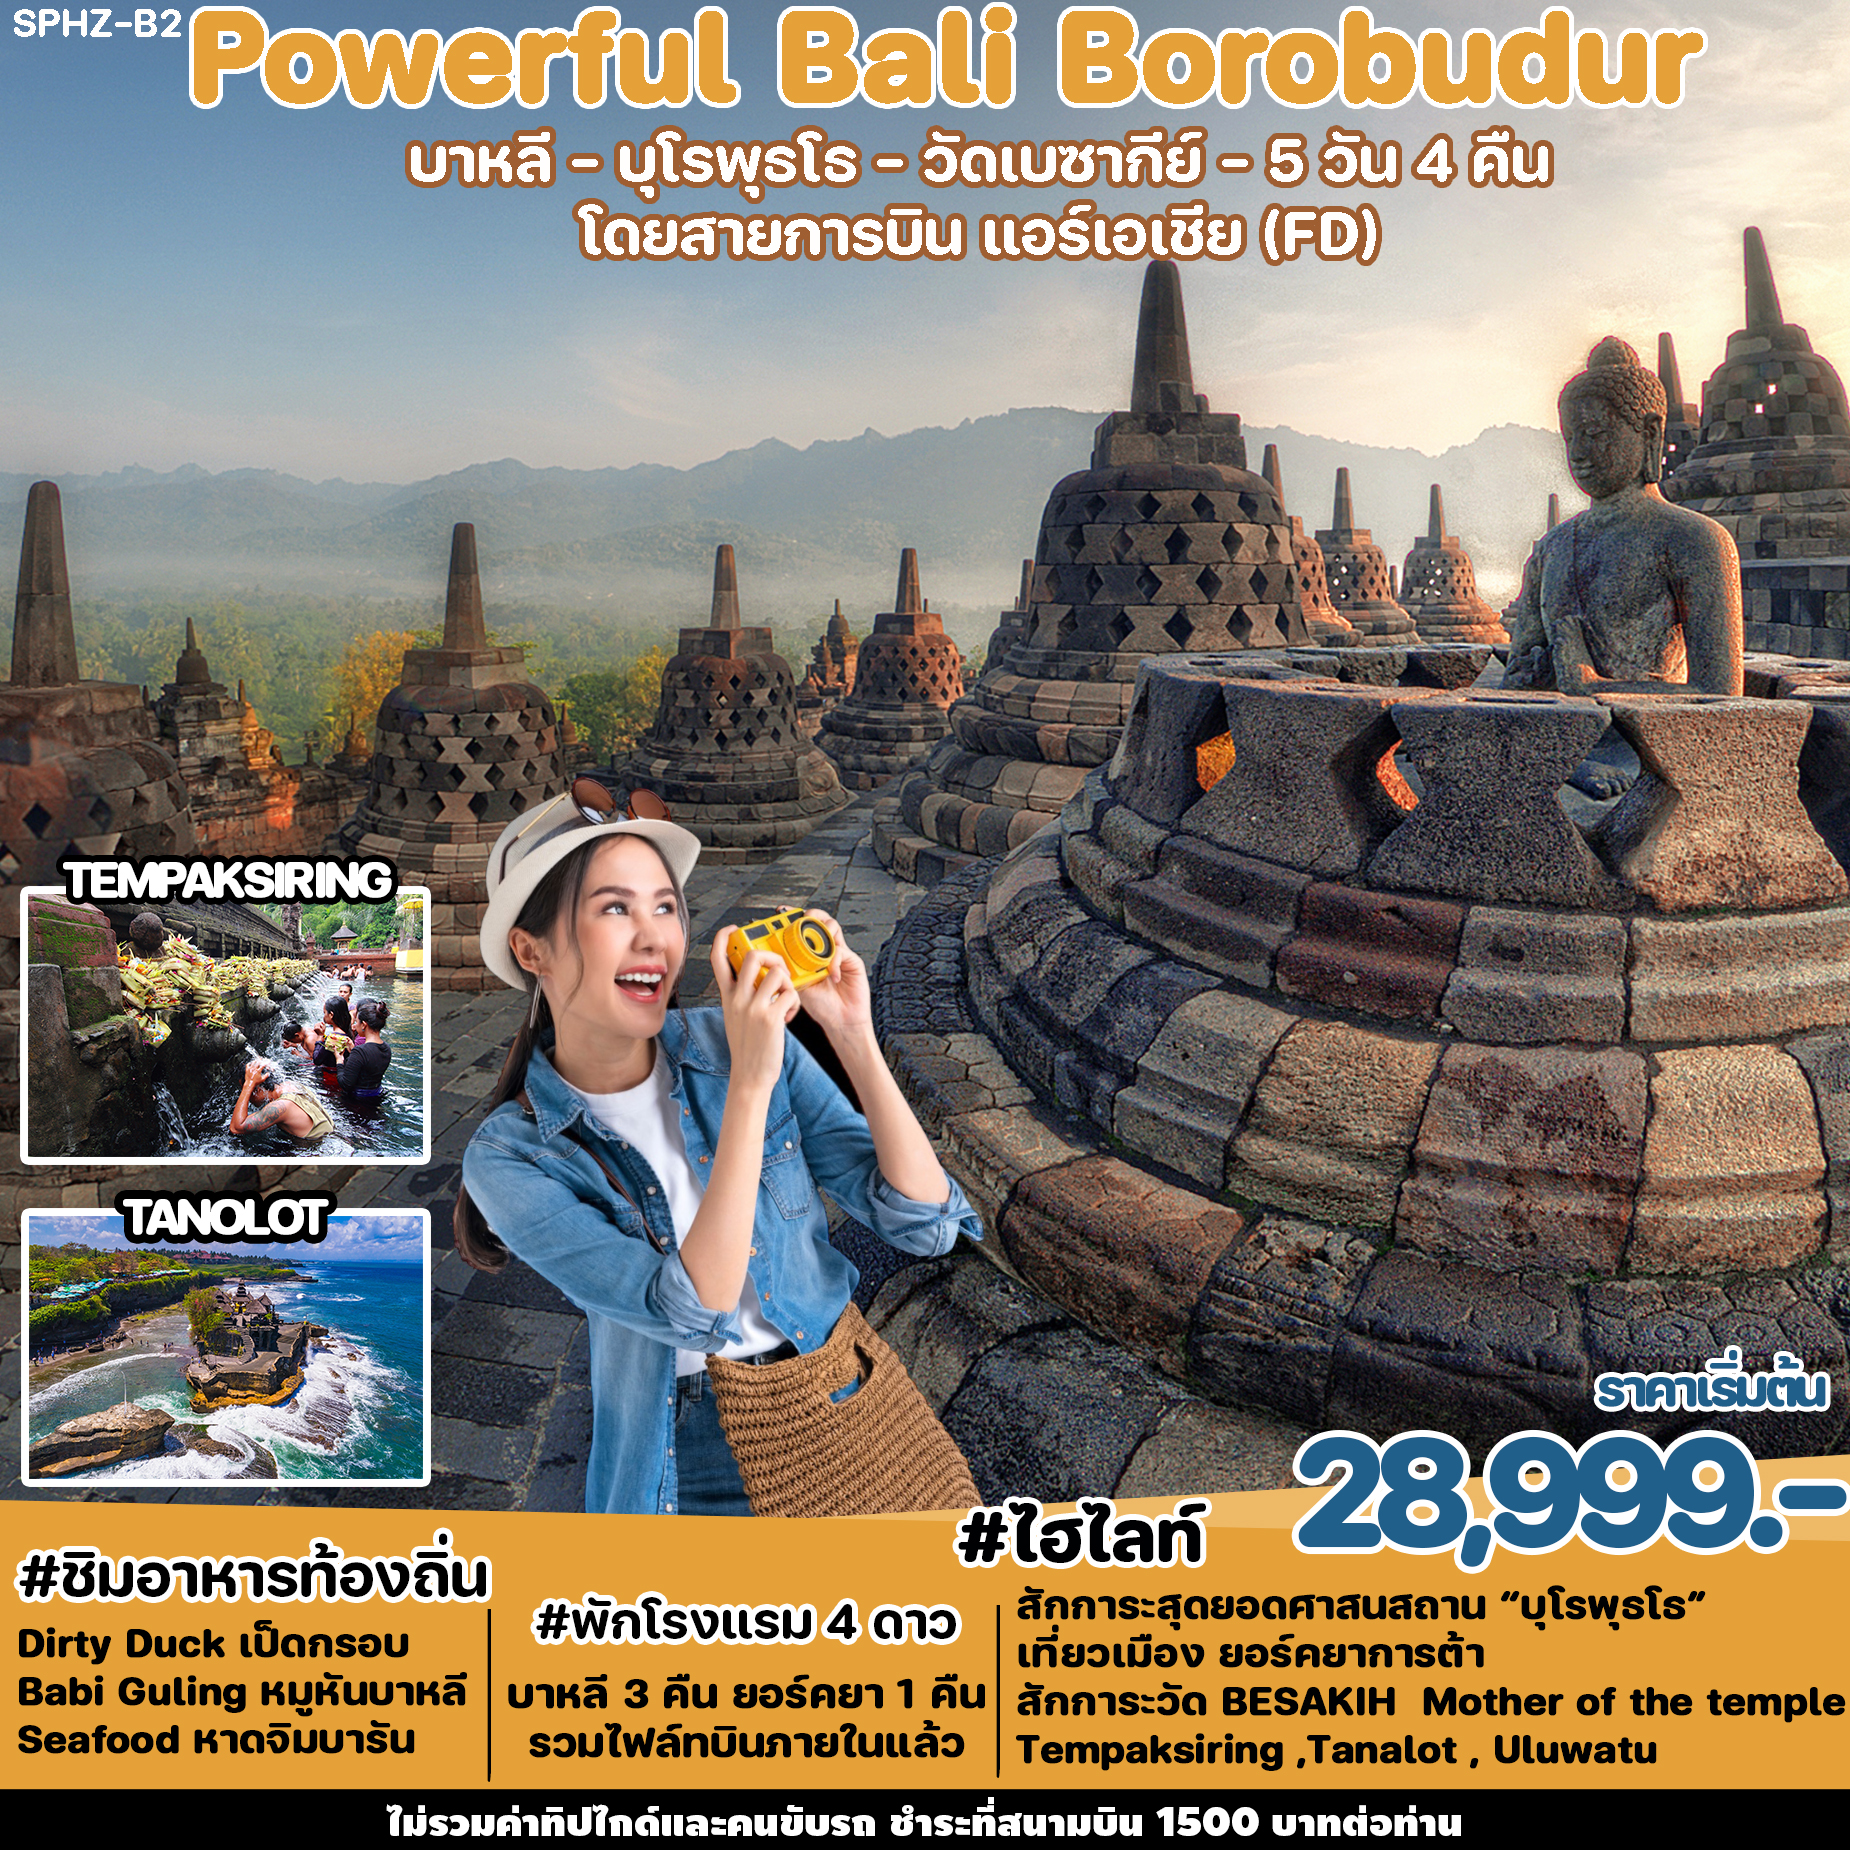 ทัวร์อินโดนีเซีย Powerful Bali Borobudur 5D (FD)